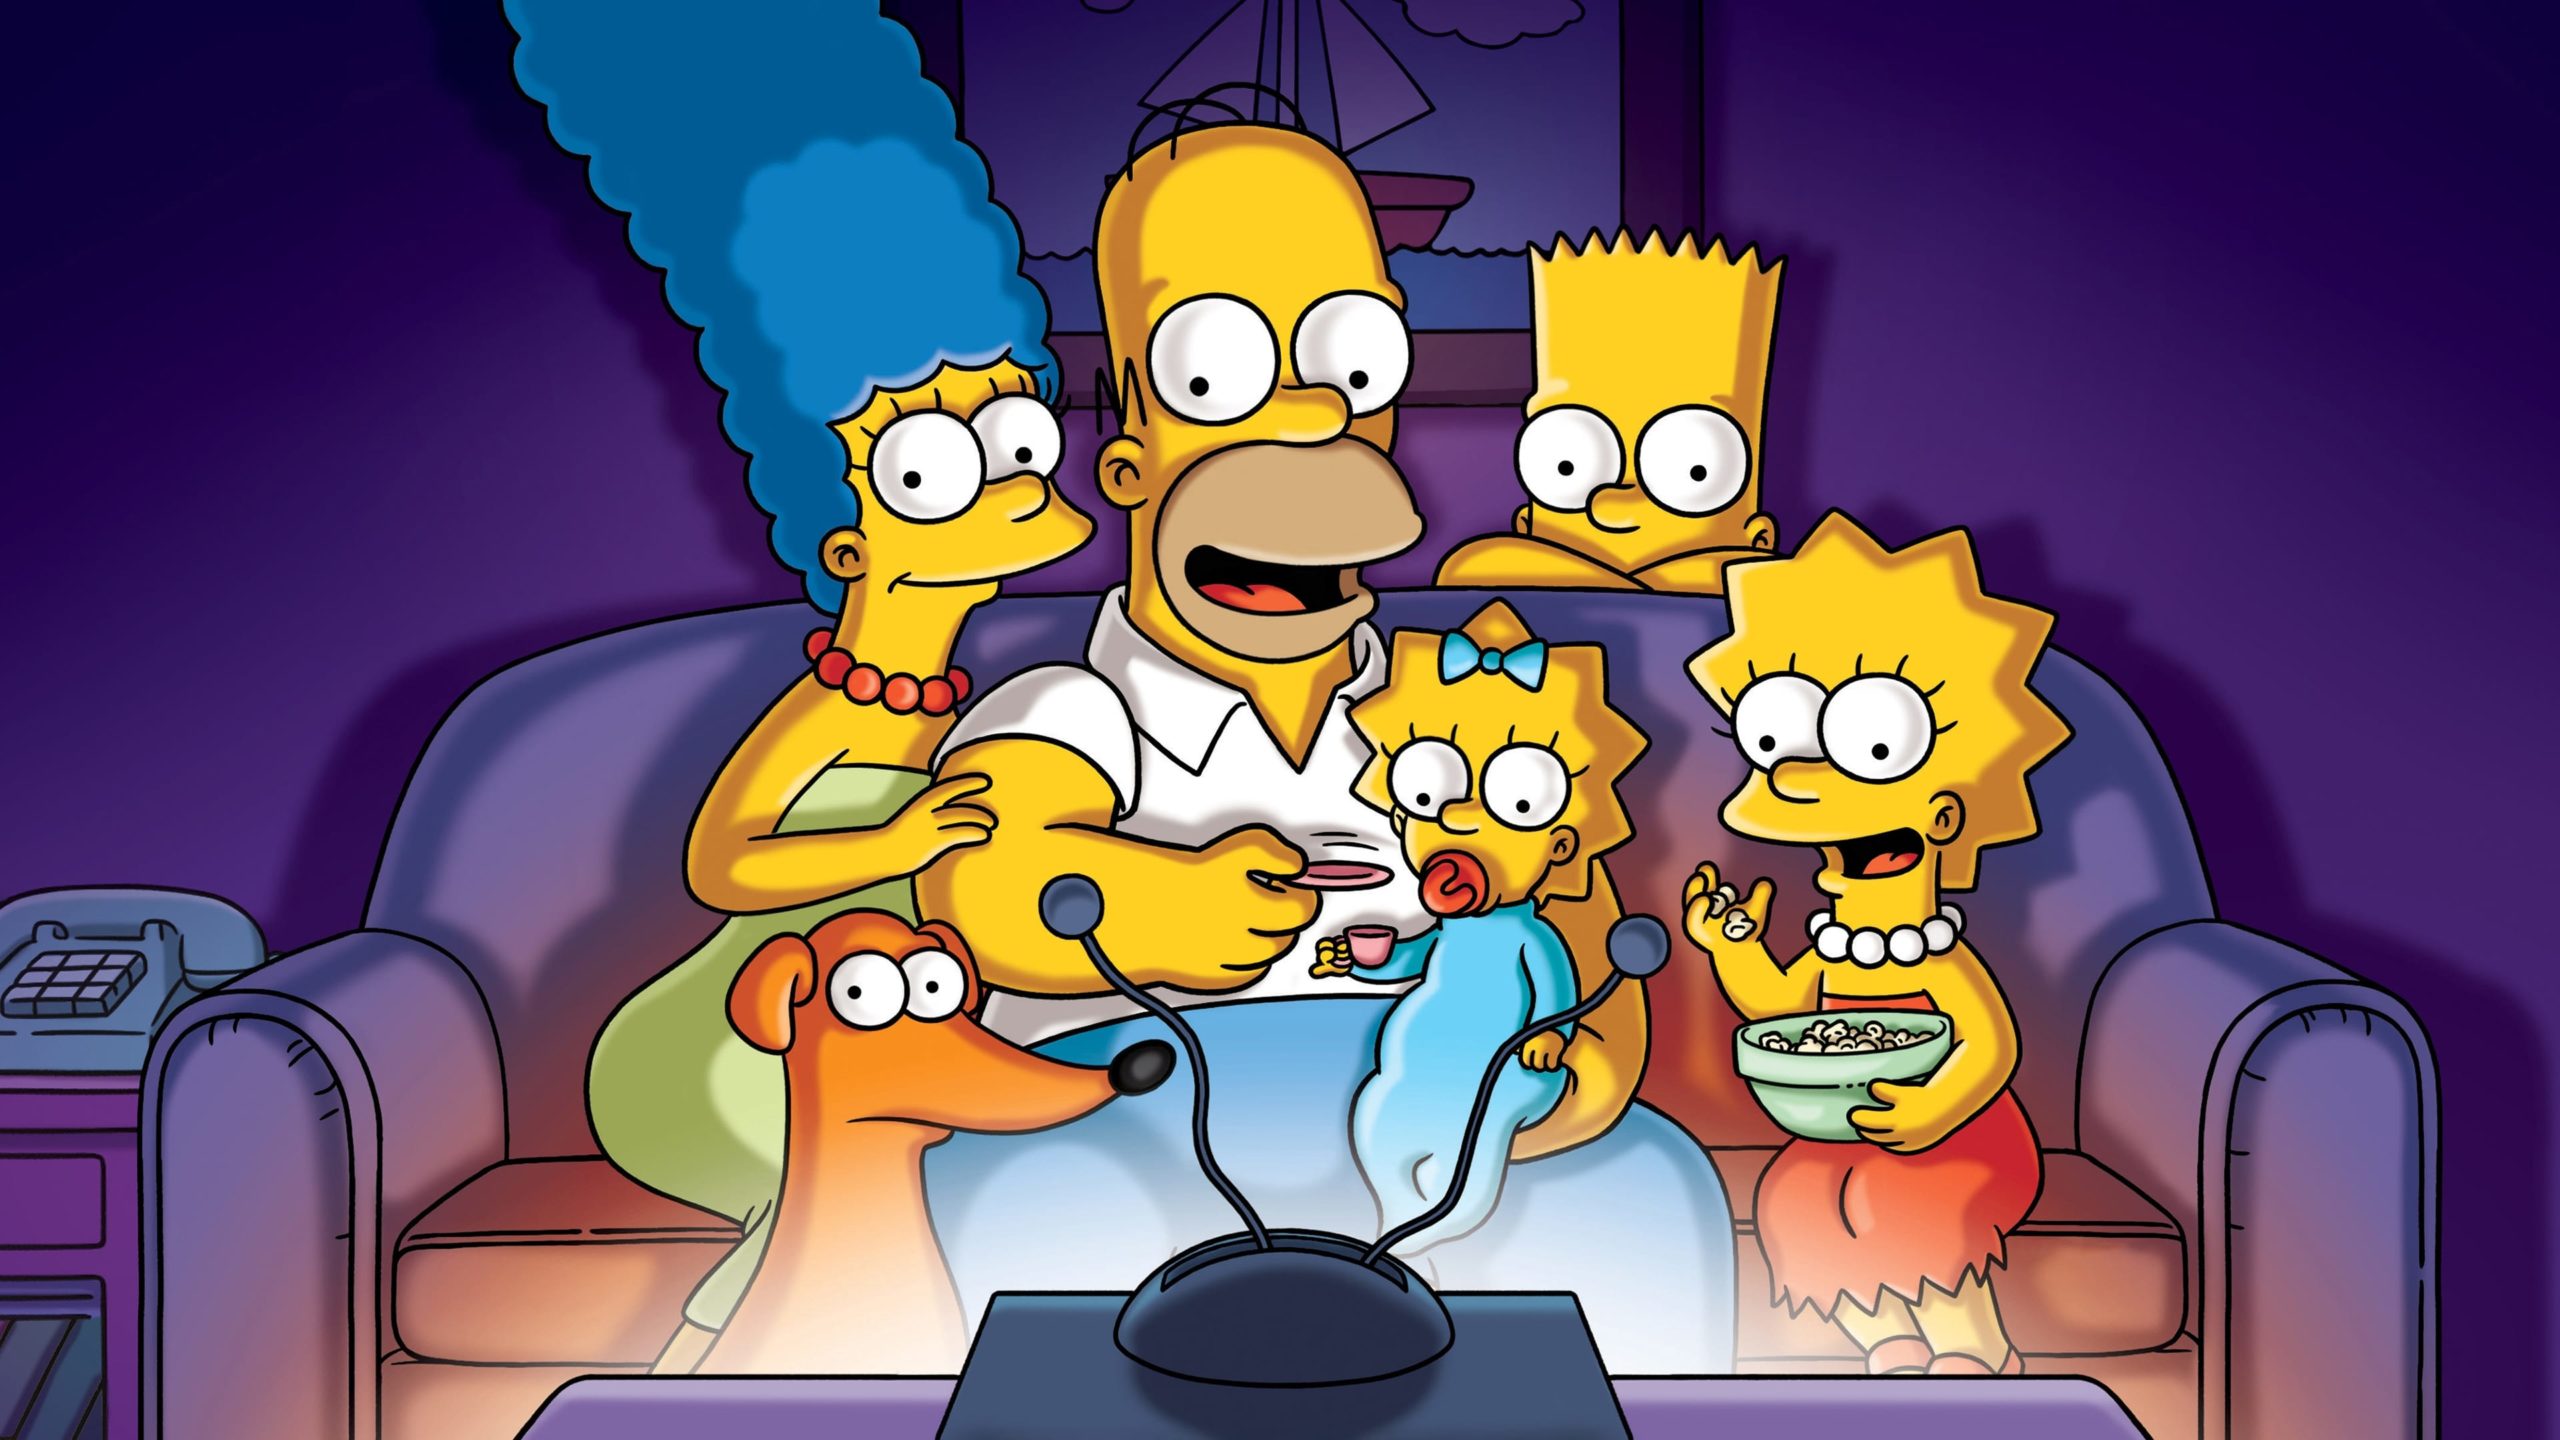 Seriál Simpsonovci